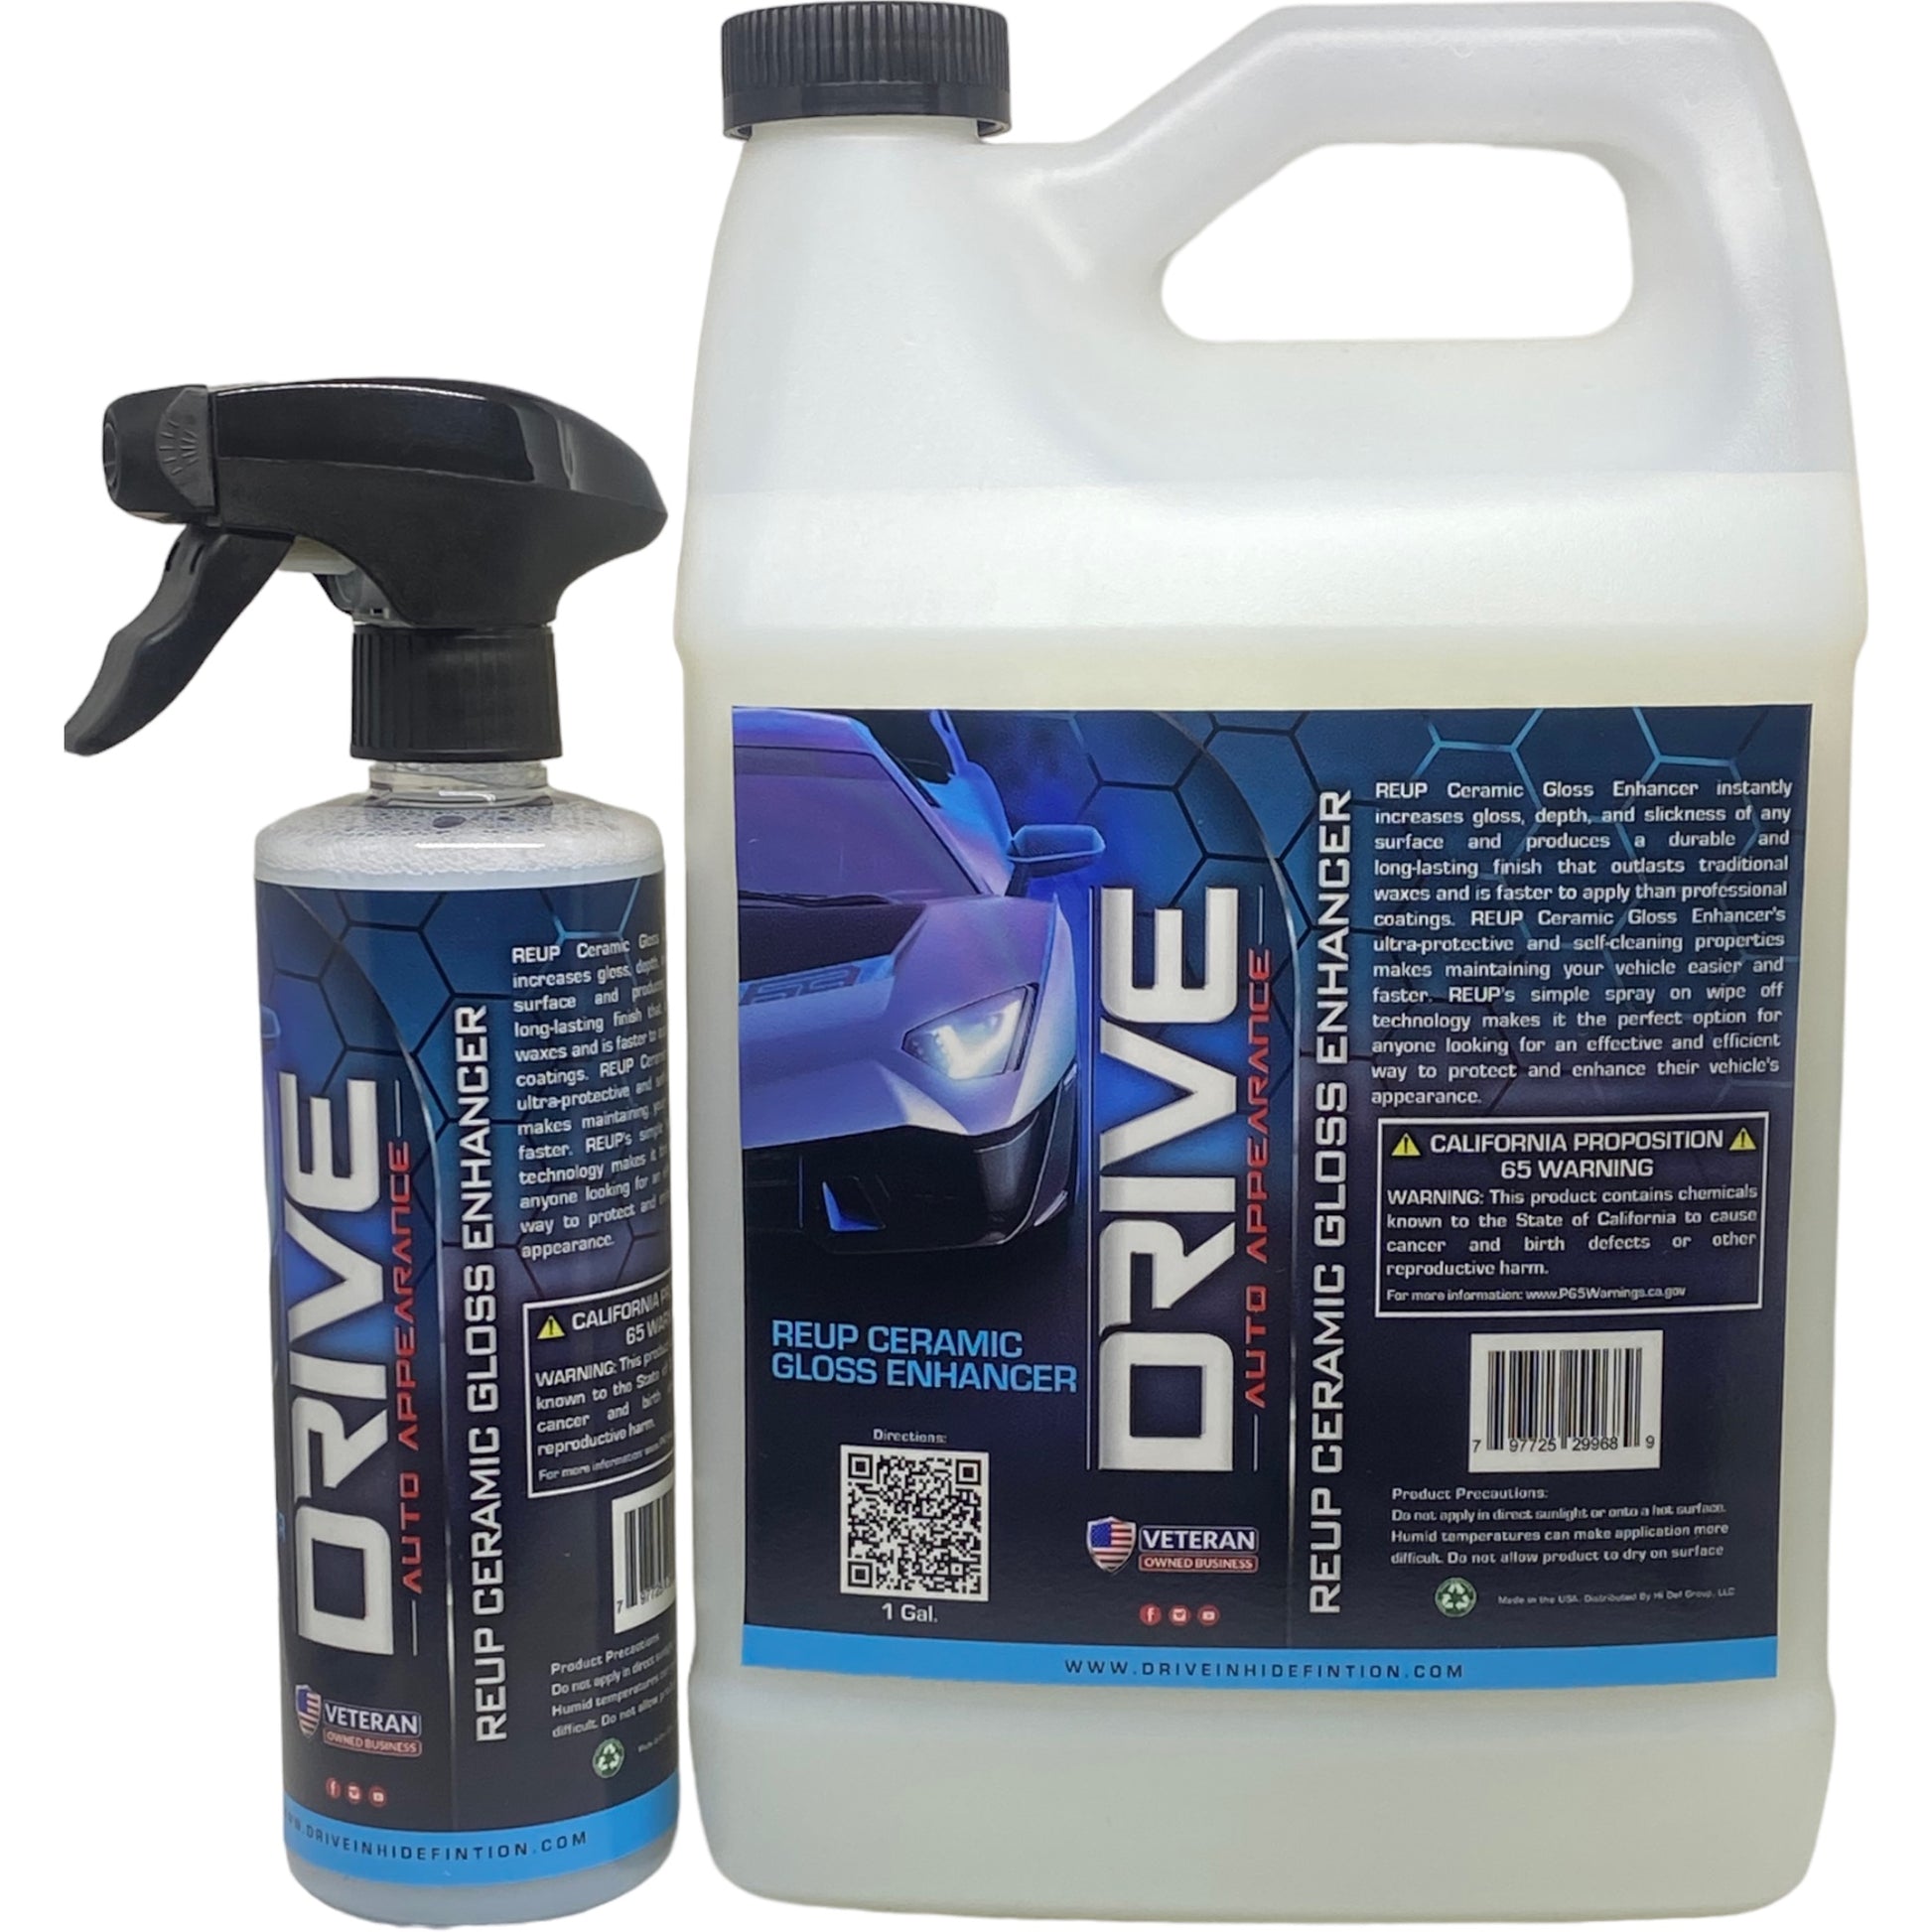 Ceramic Spray Wax Enhancer